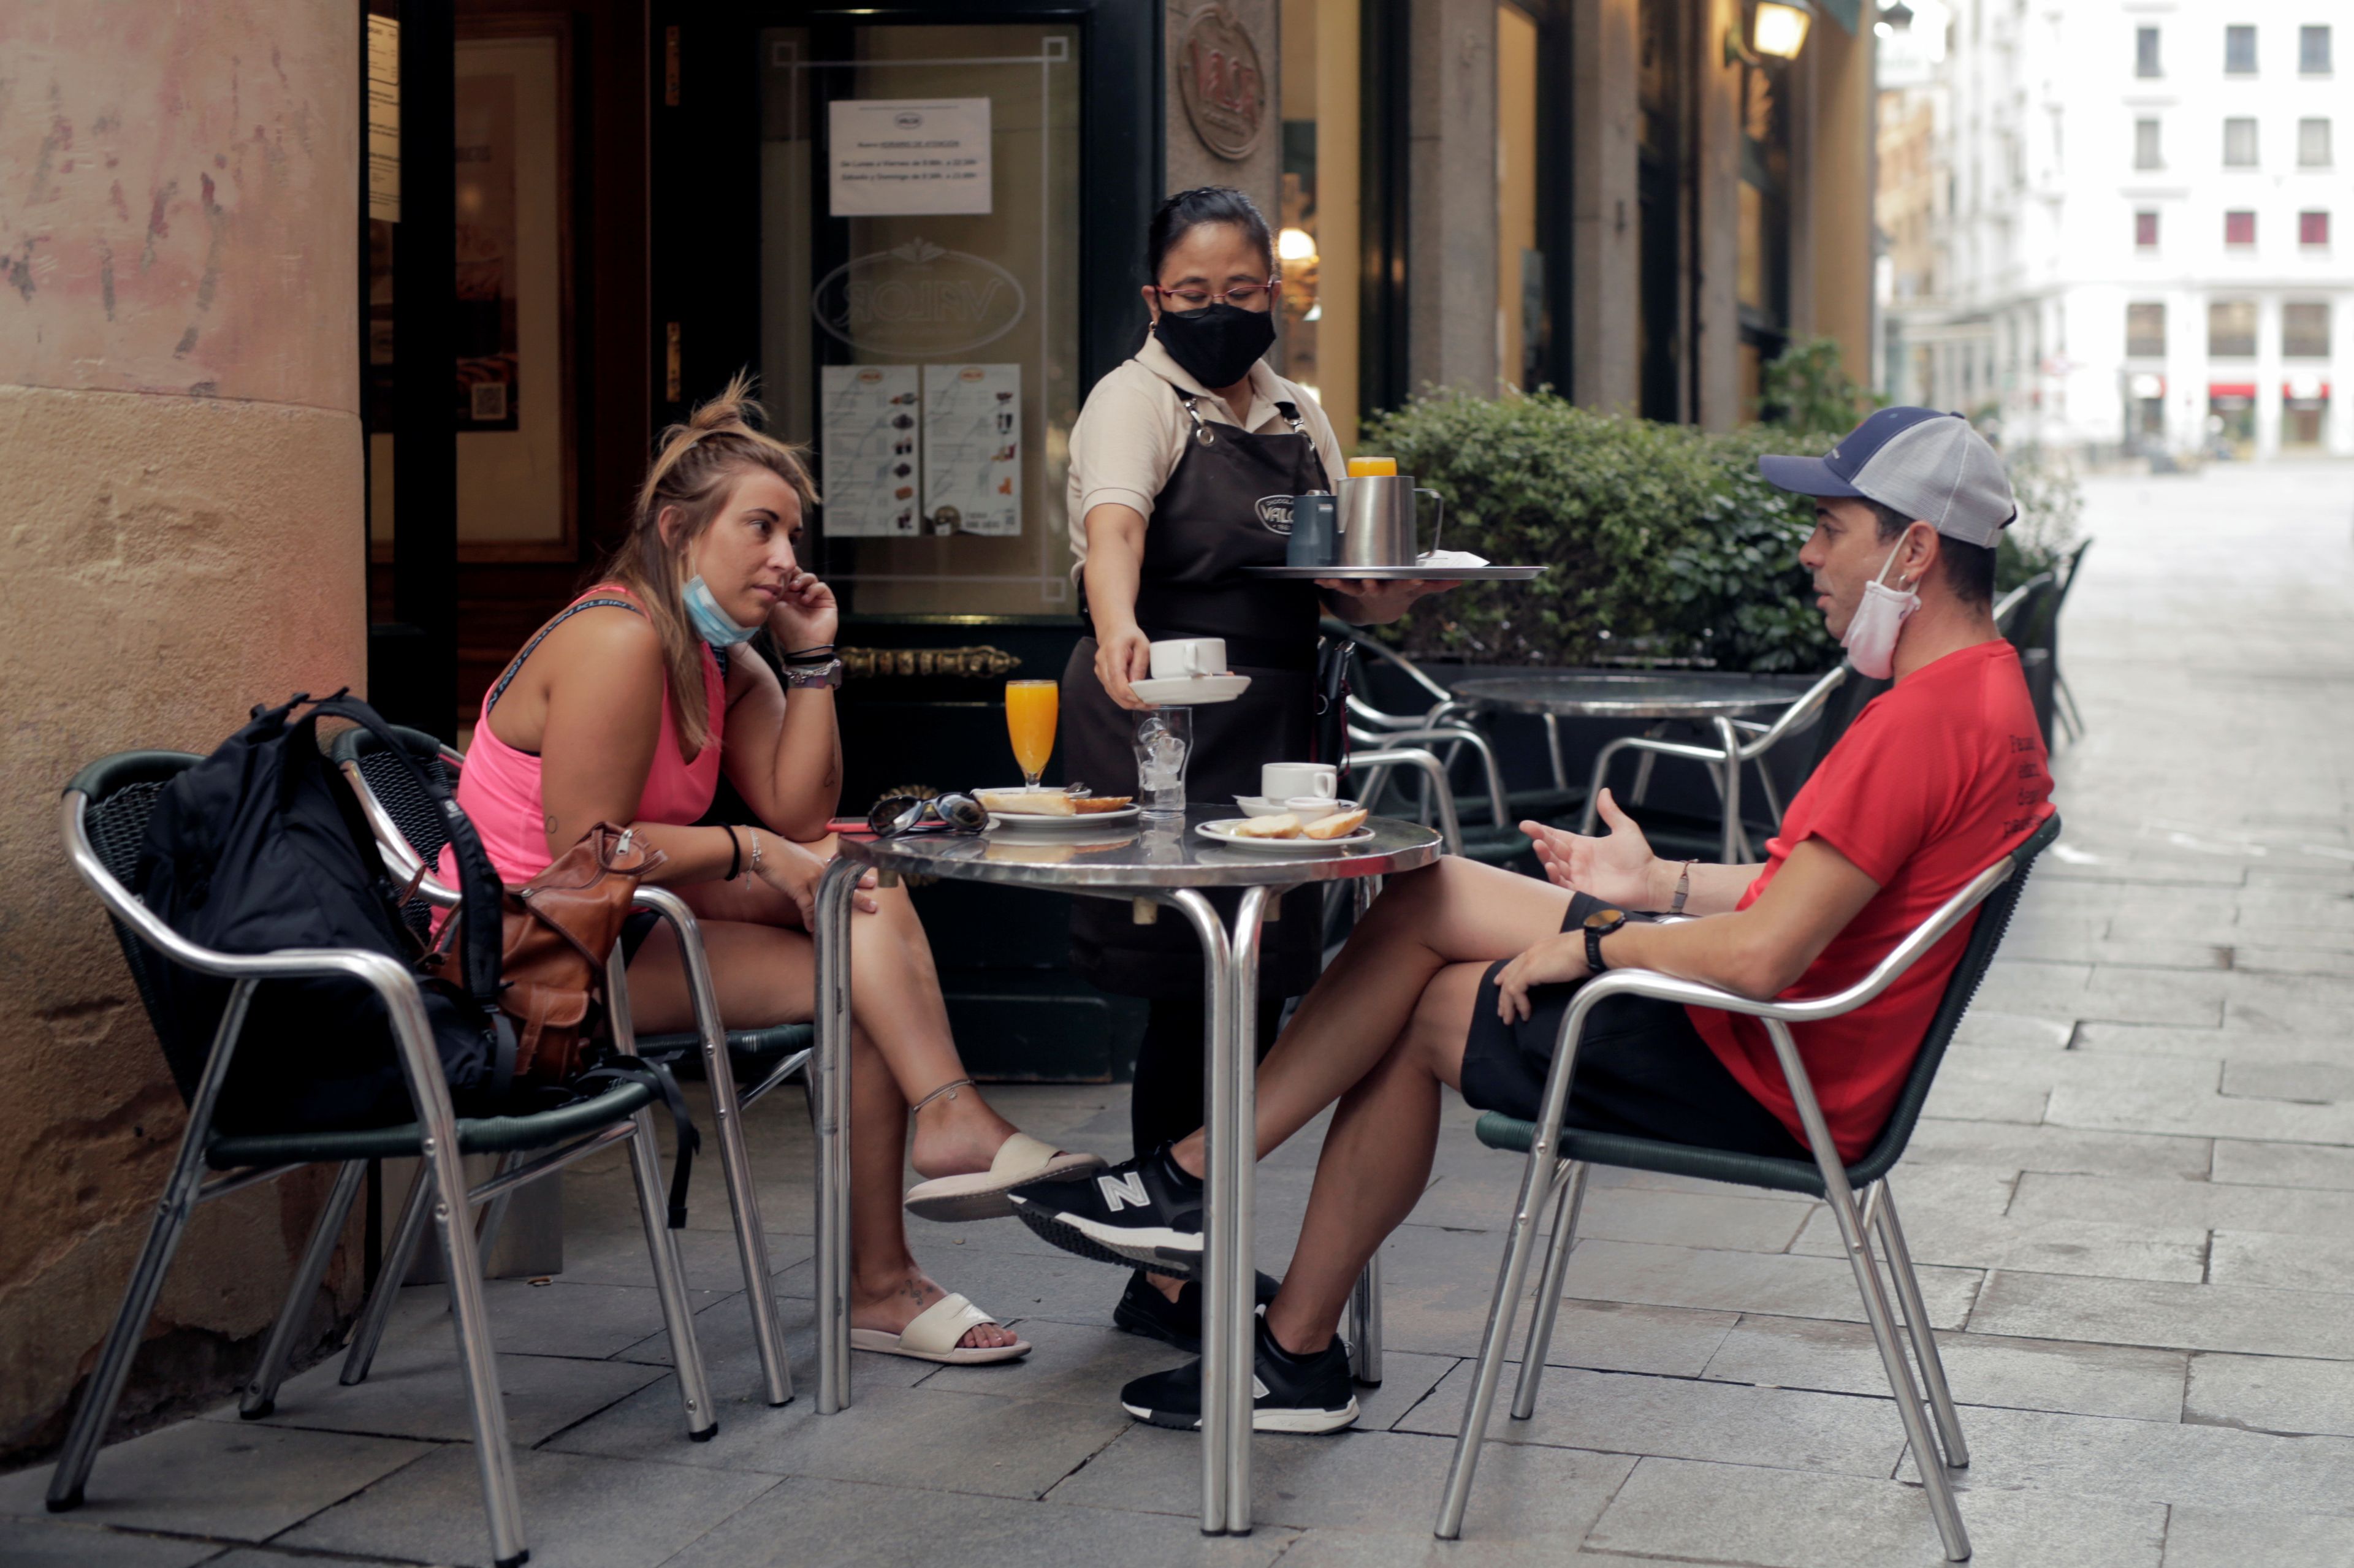 Dos jóvenes tomando algo en una terraza en Madrid.